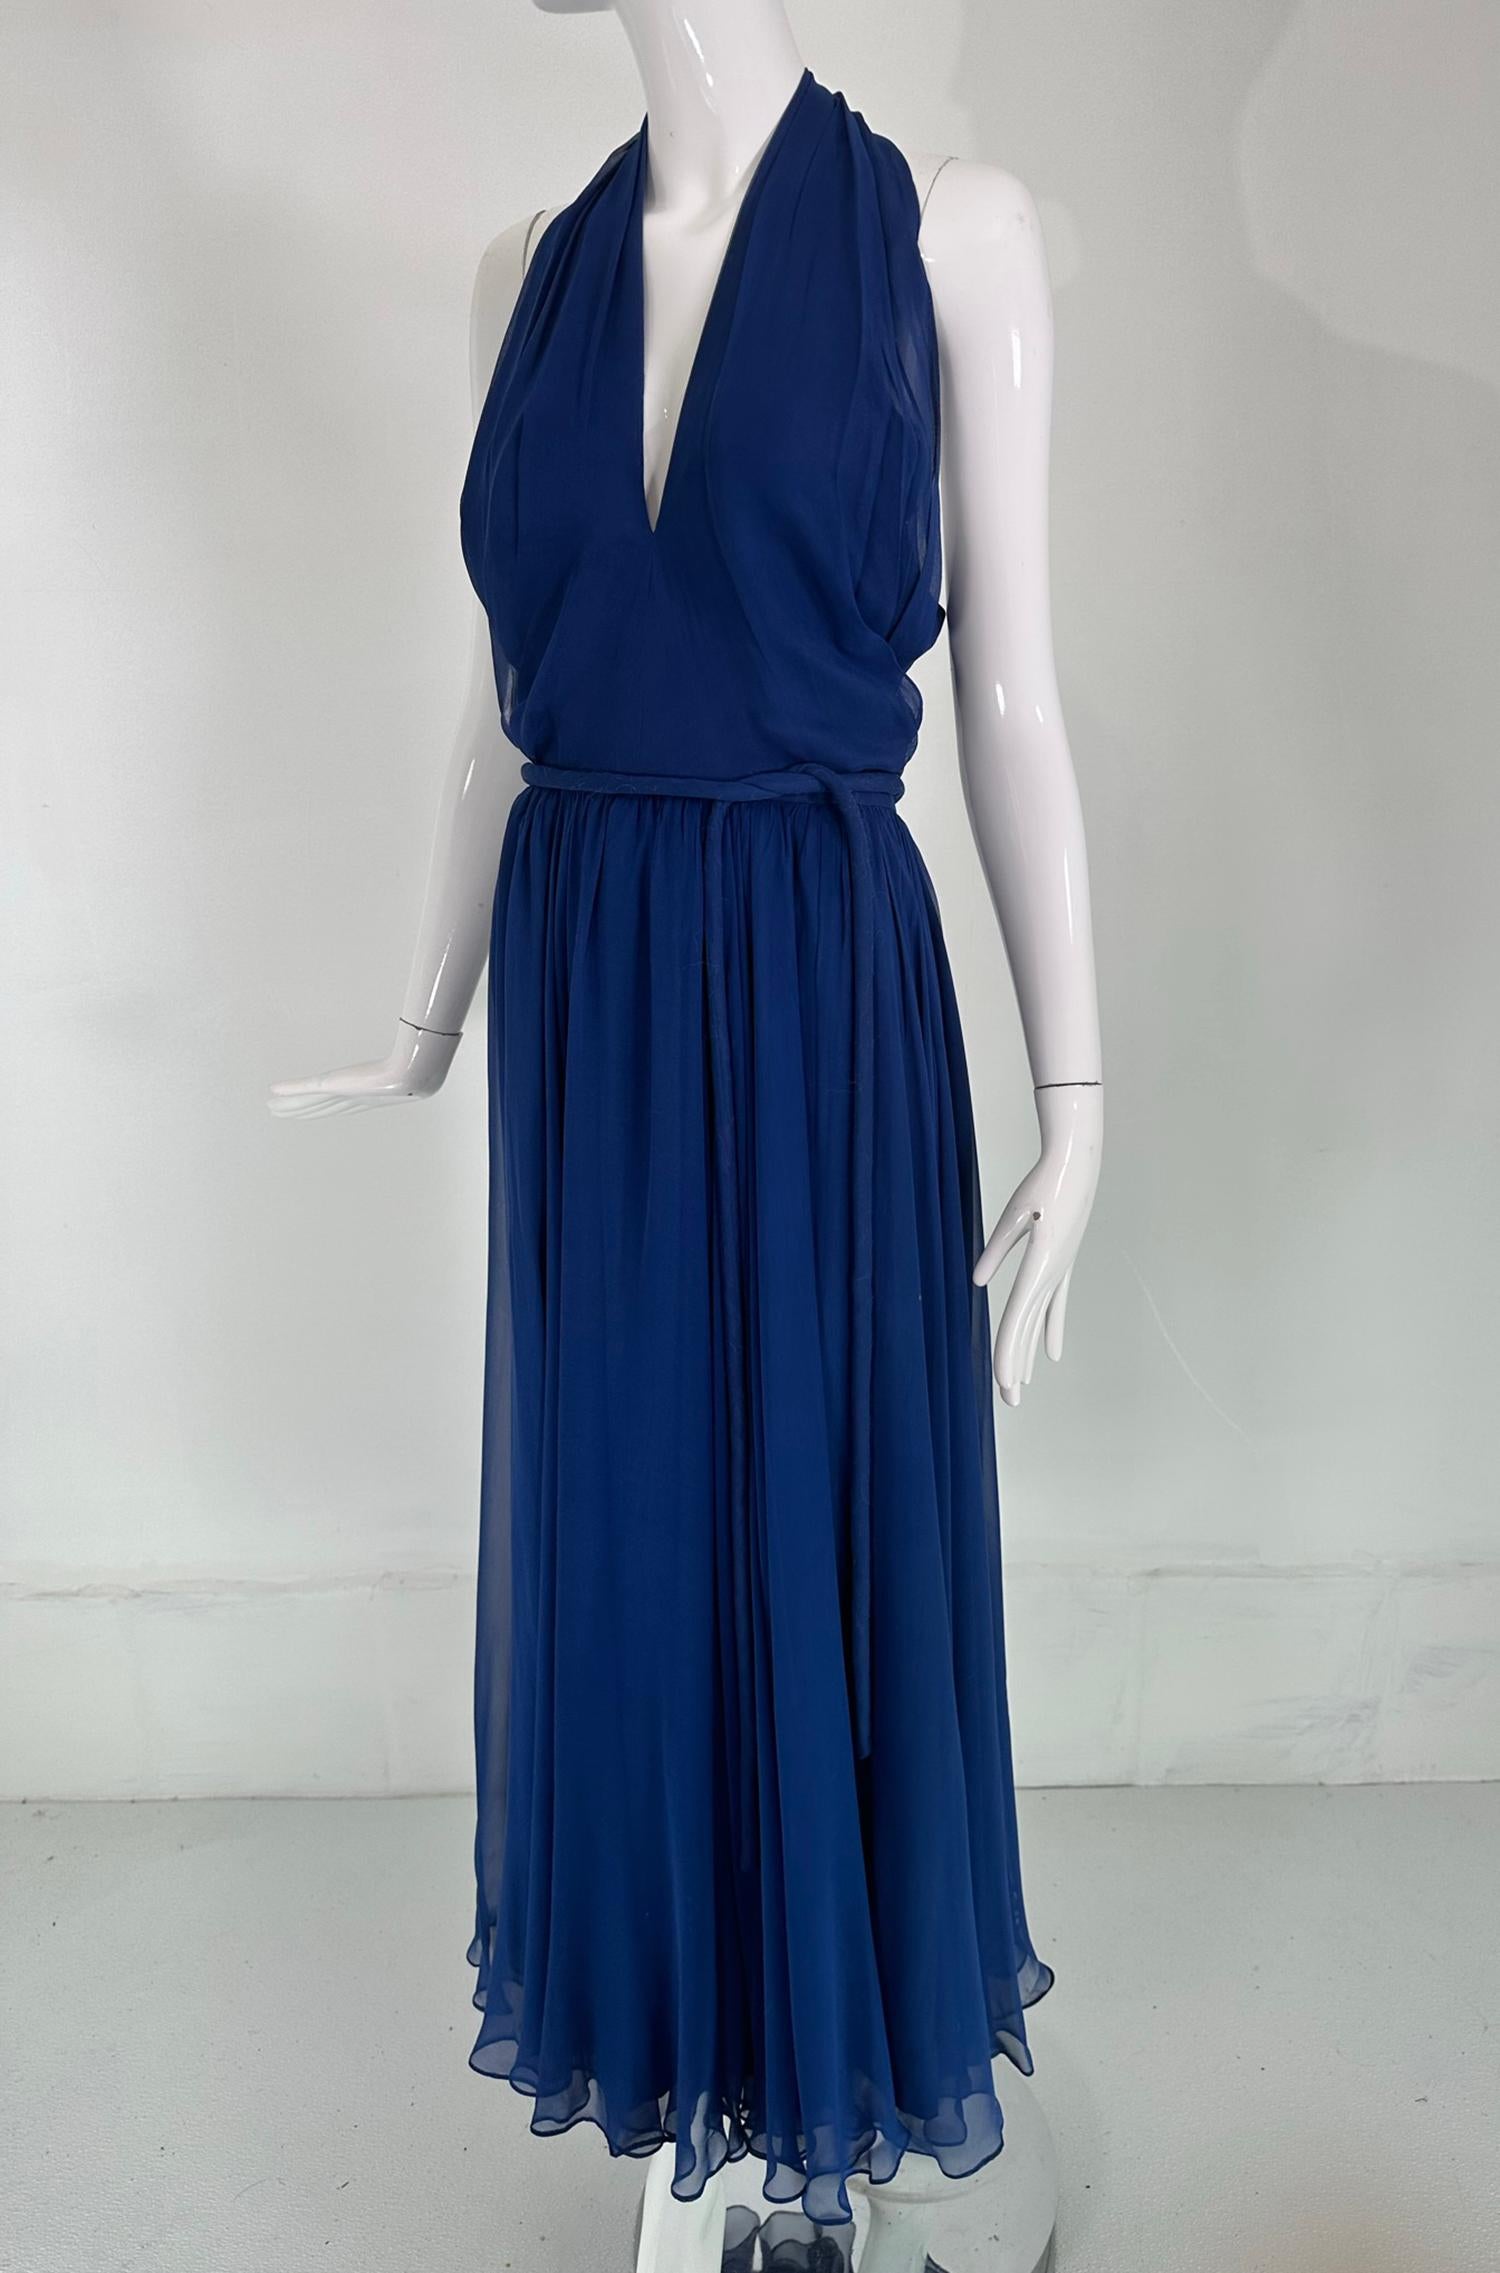 Larry Aldrich, Bonwit Teller, robe maxi en mousseline de soie bleu royal à col licou en V plongeant, datant des années 1970. Classique des années 1940  Robe de style déesse hollywoodienne dans une magnifique nuance de bleu royal. La robe est